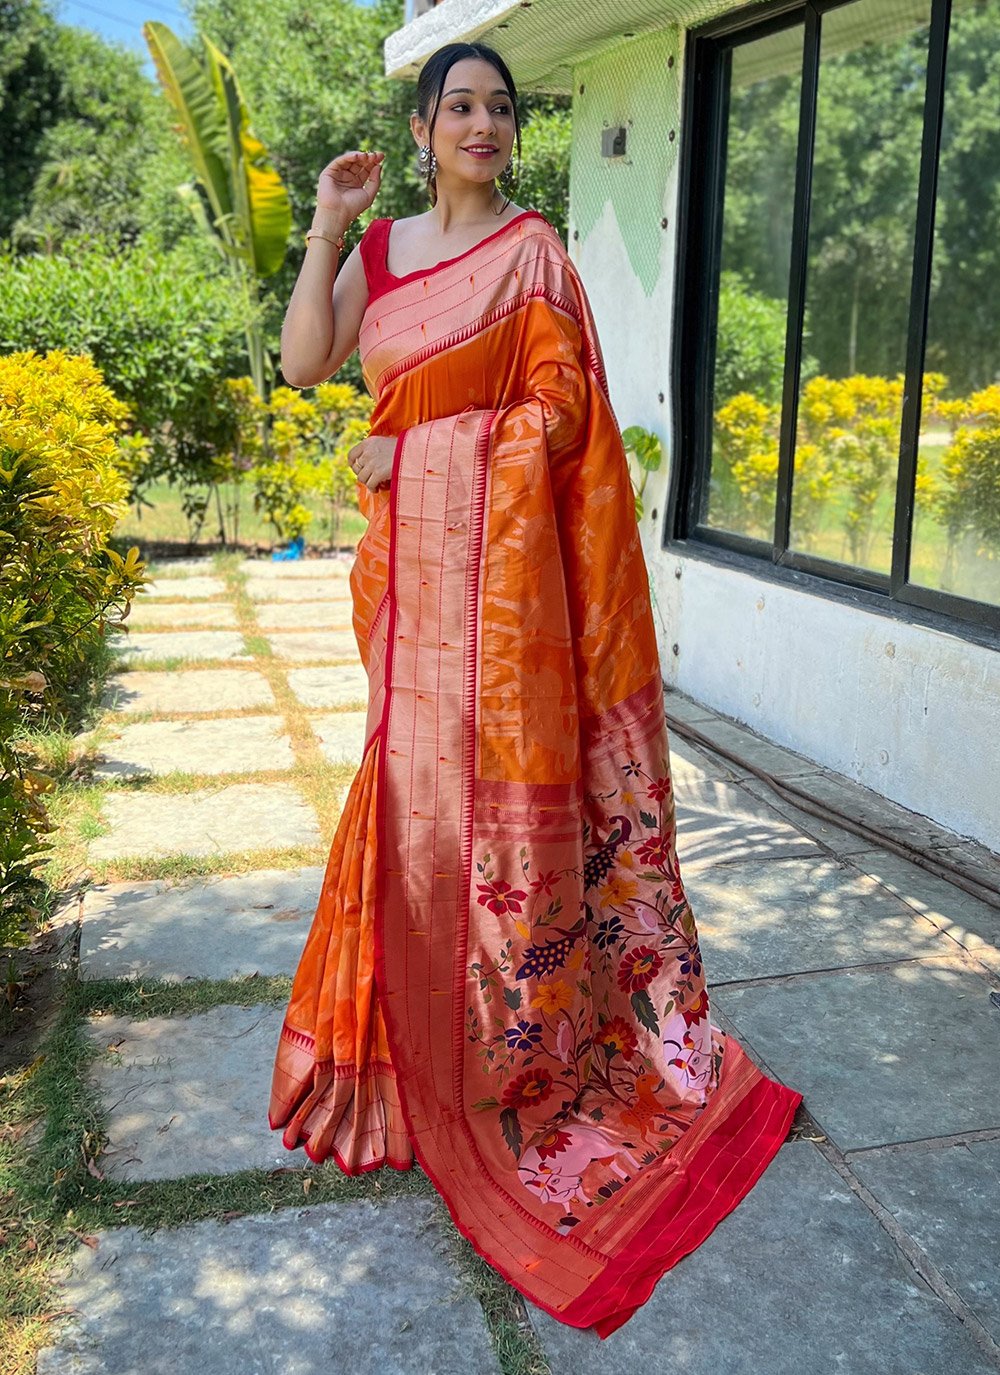 Saree pose traditional saree pose | Saree poses, Saree, Traditional sarees-megaelearning.vn